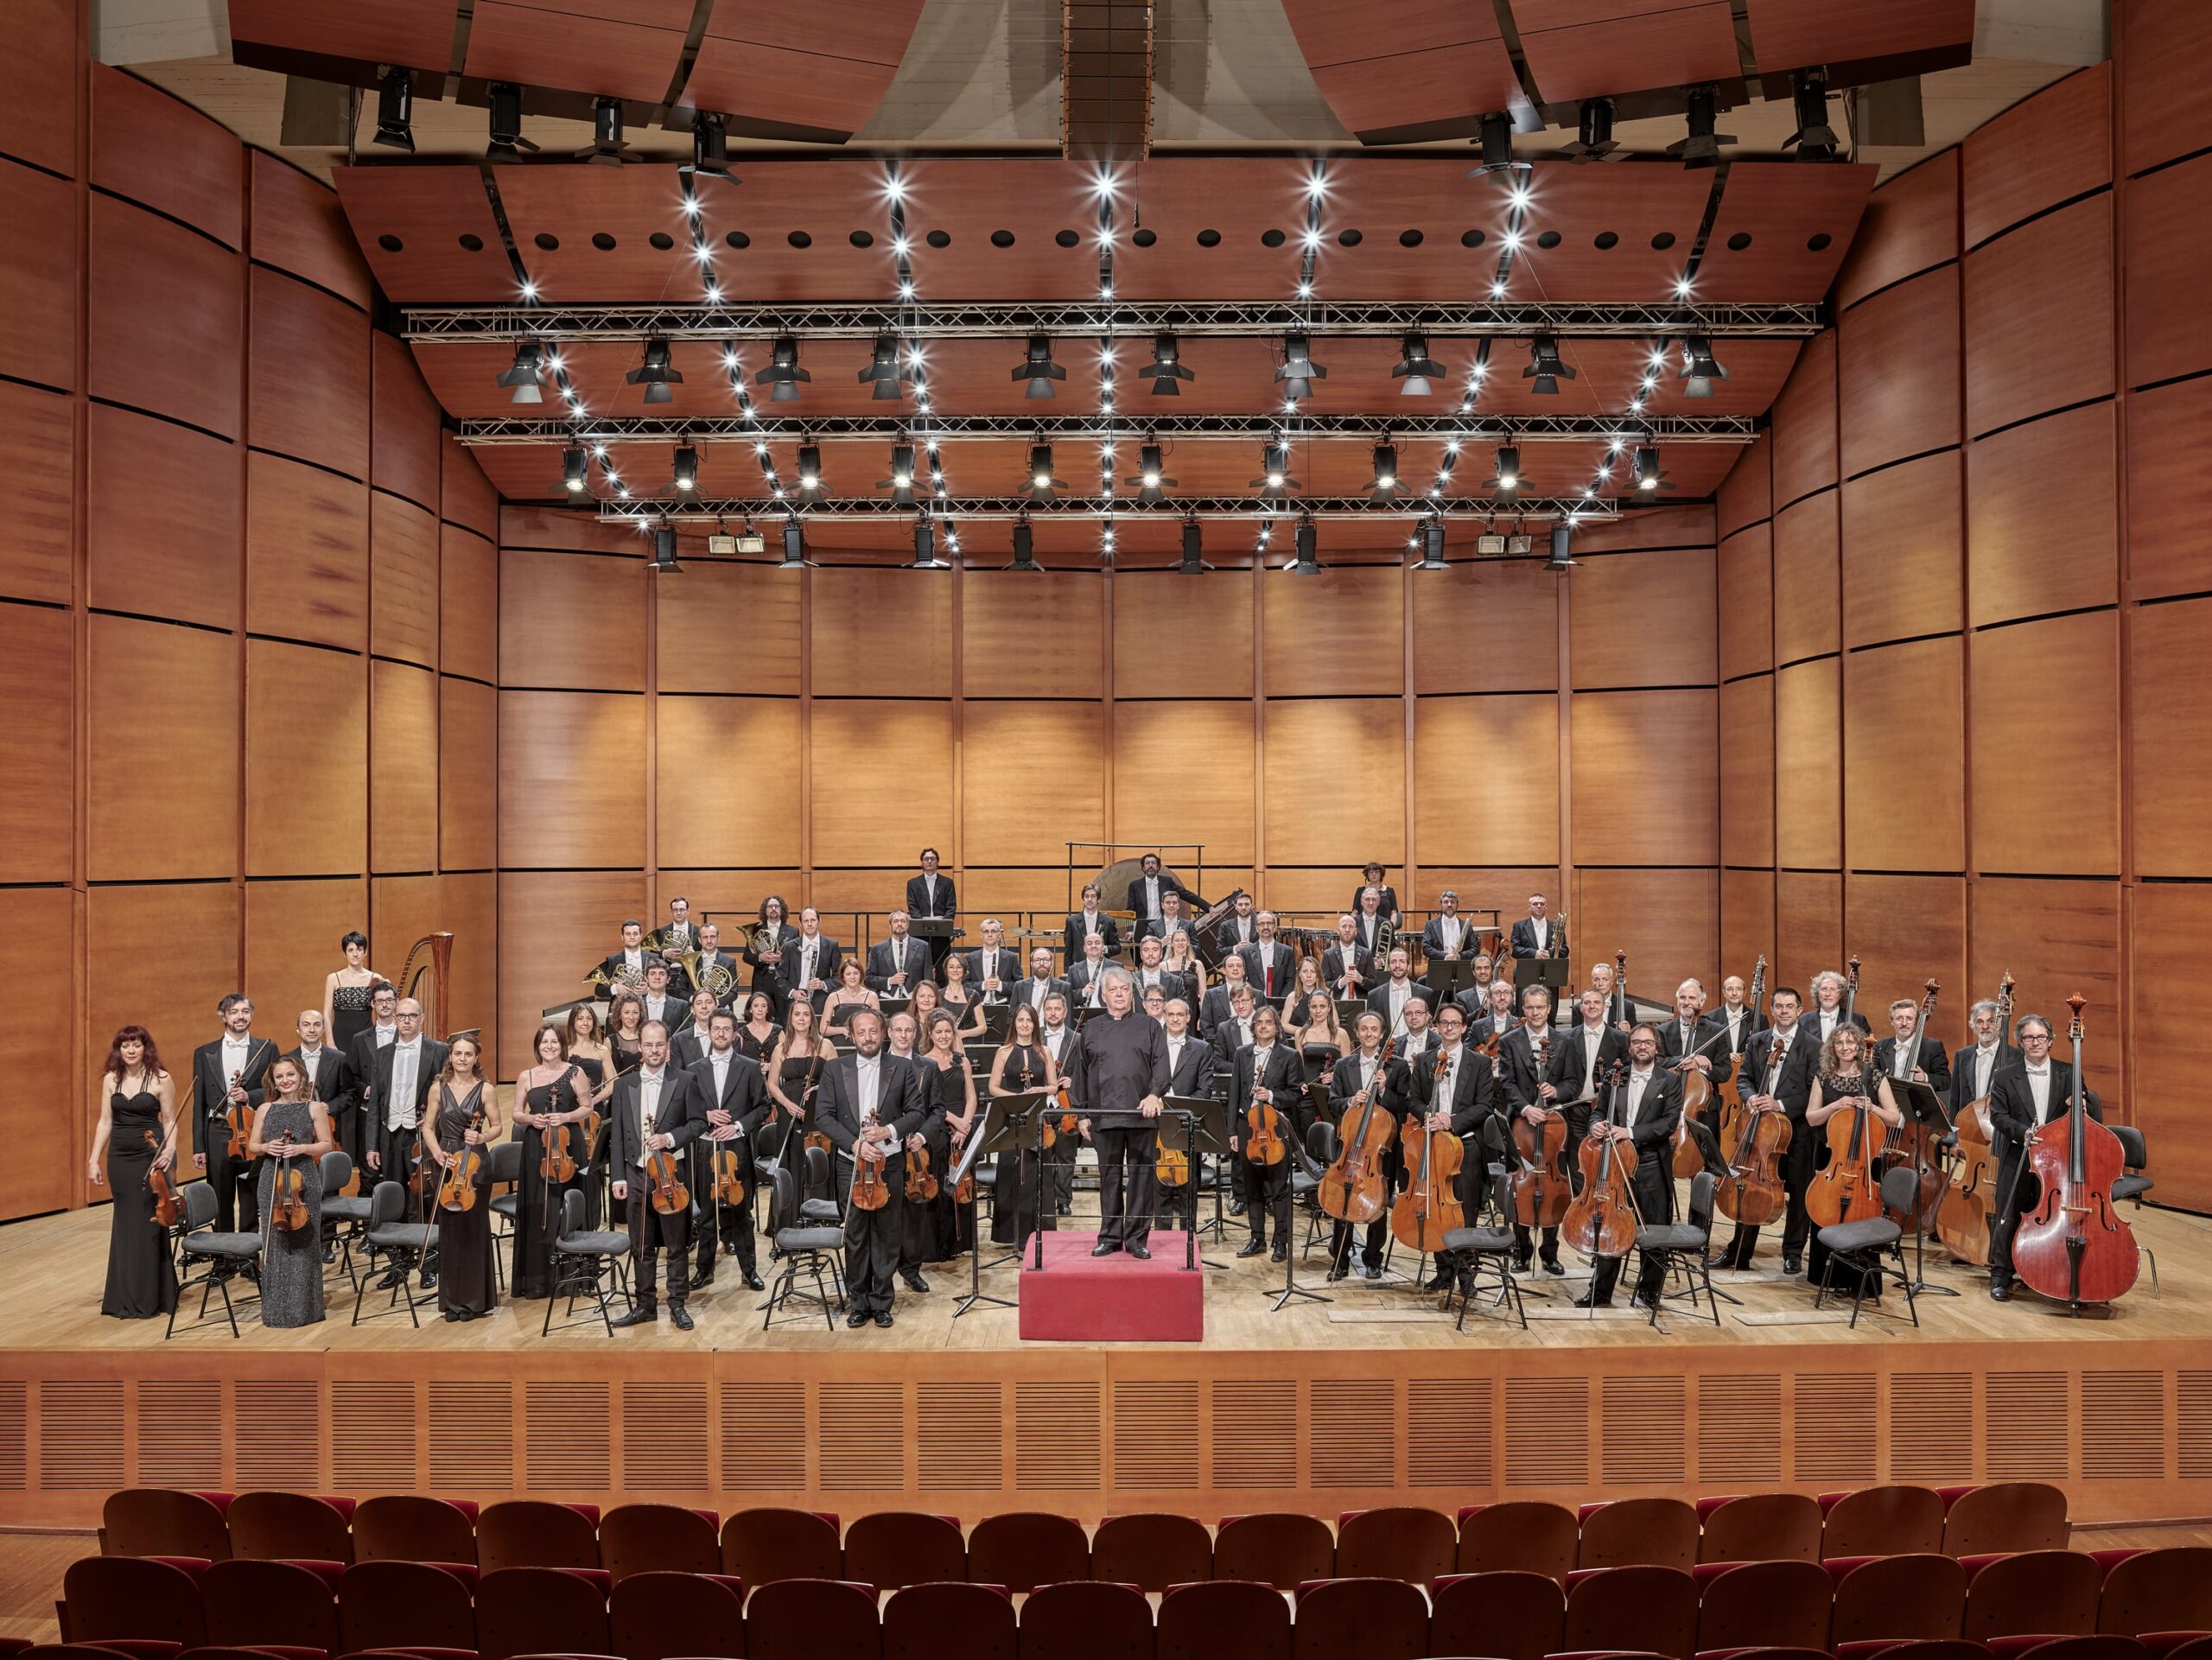 Concerti per tutta Milano: l’Orchestra Sinfonica porta la musica classica in ogni quartiere della città